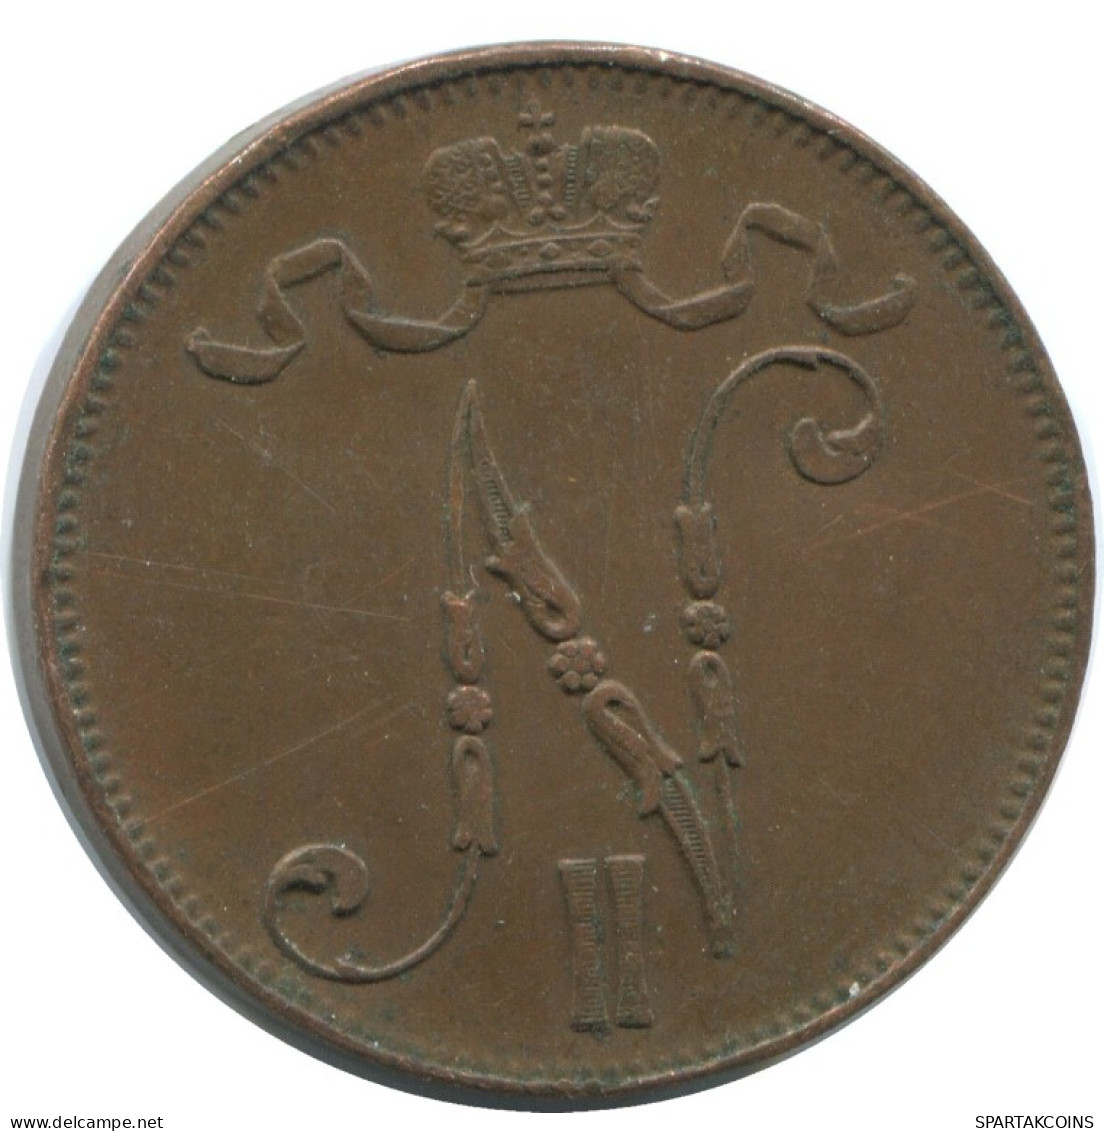 5 PENNIA 1916 FINLAND Coin RUSSIA EMPIRE #AB165.5.U.A - Finland